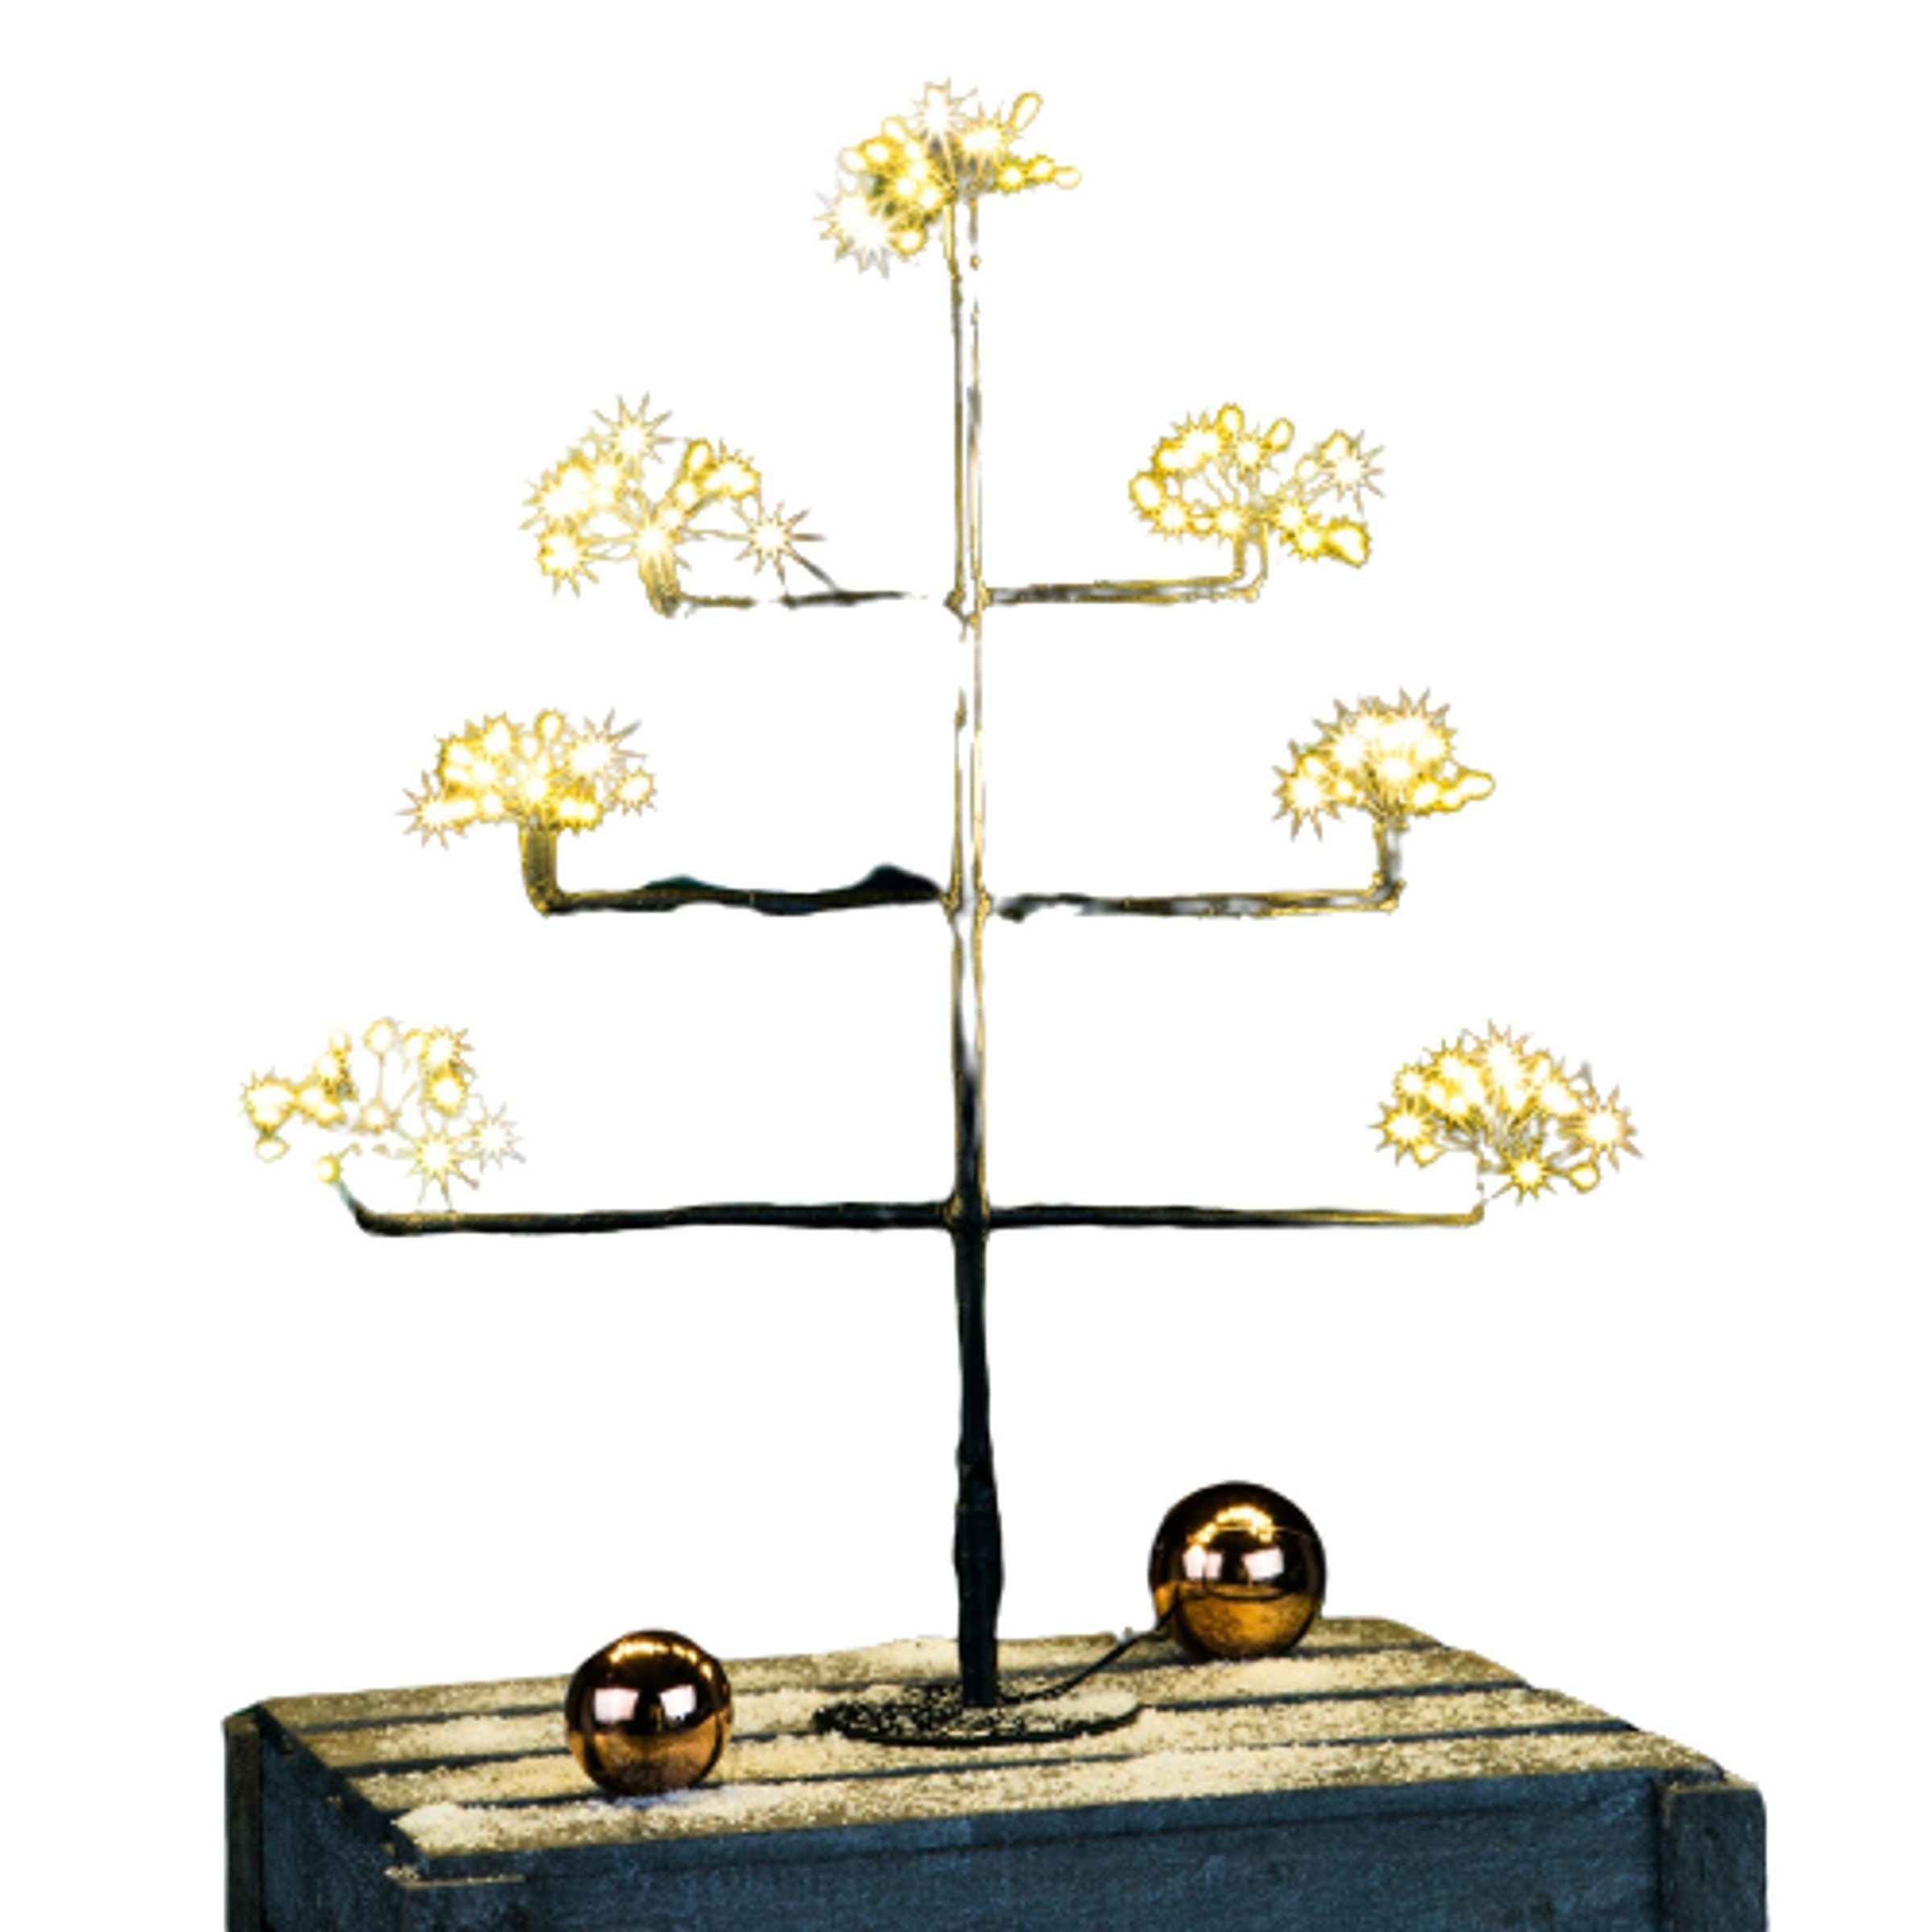 Baum mit 140 Gravidus Weihnachtsfigur Sterneffekt, Weihnachtsbaum LED